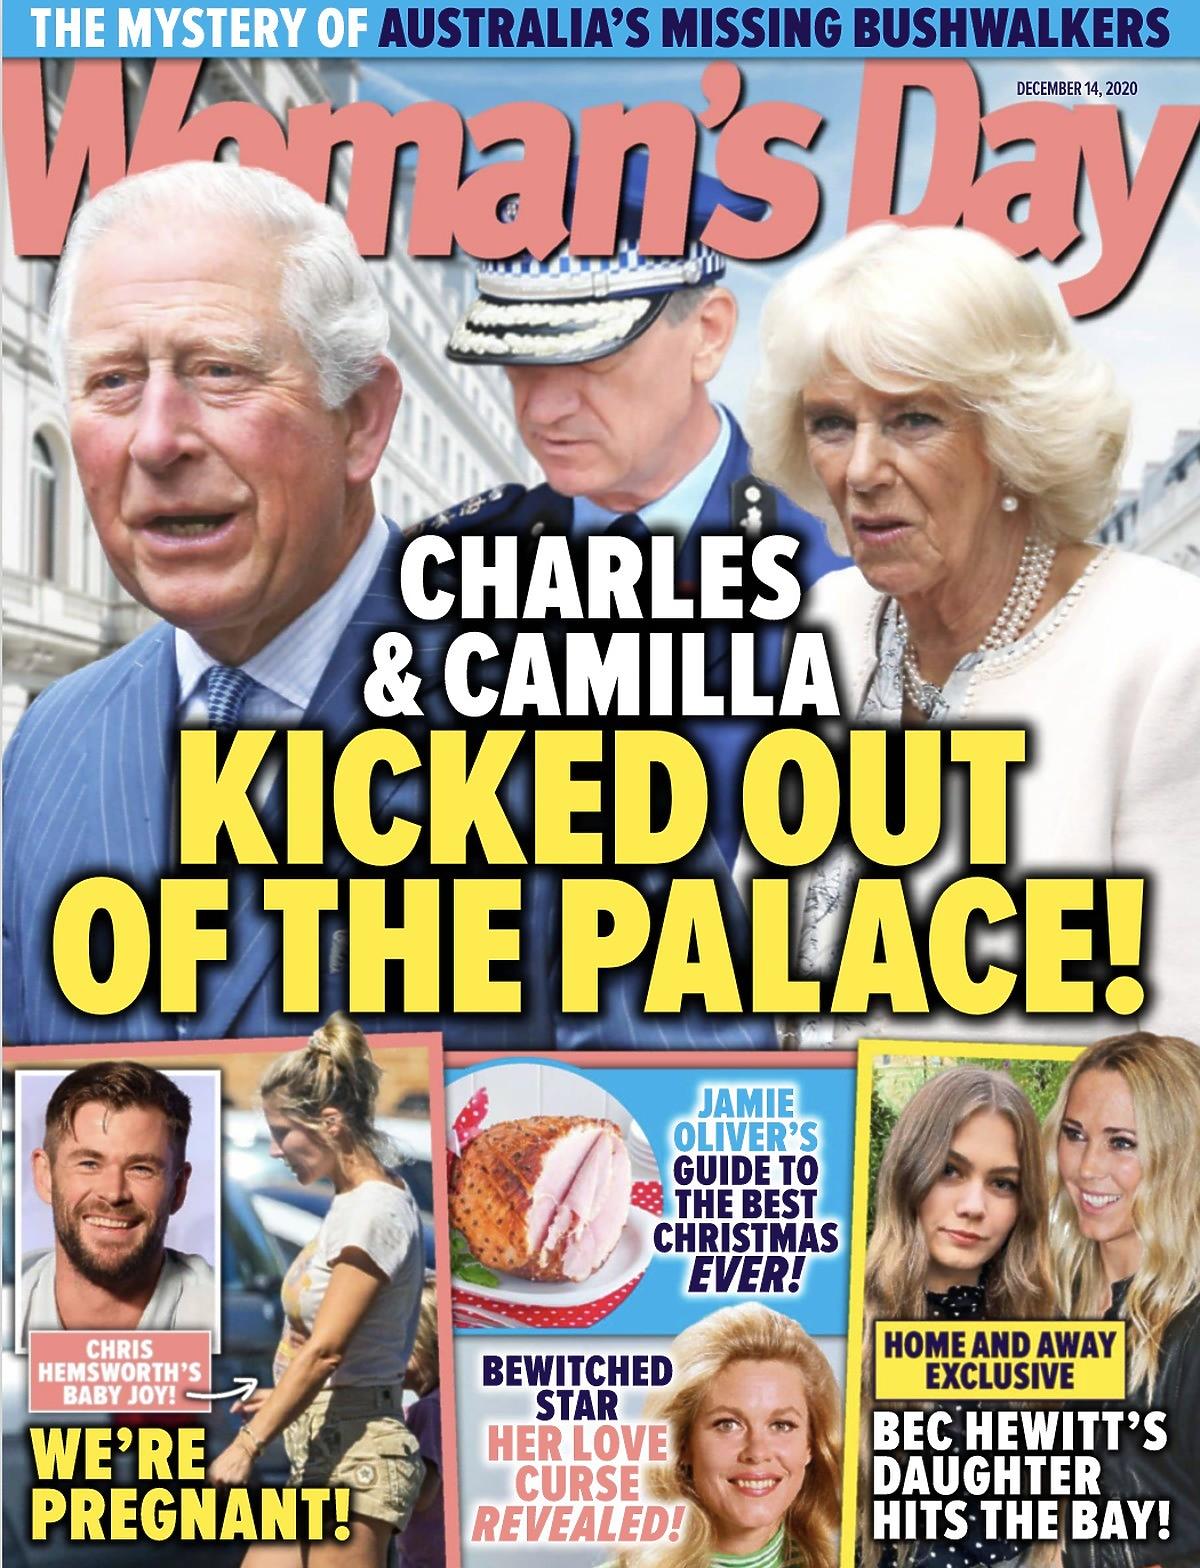 Książę Karol został wyrzucony z pałacu